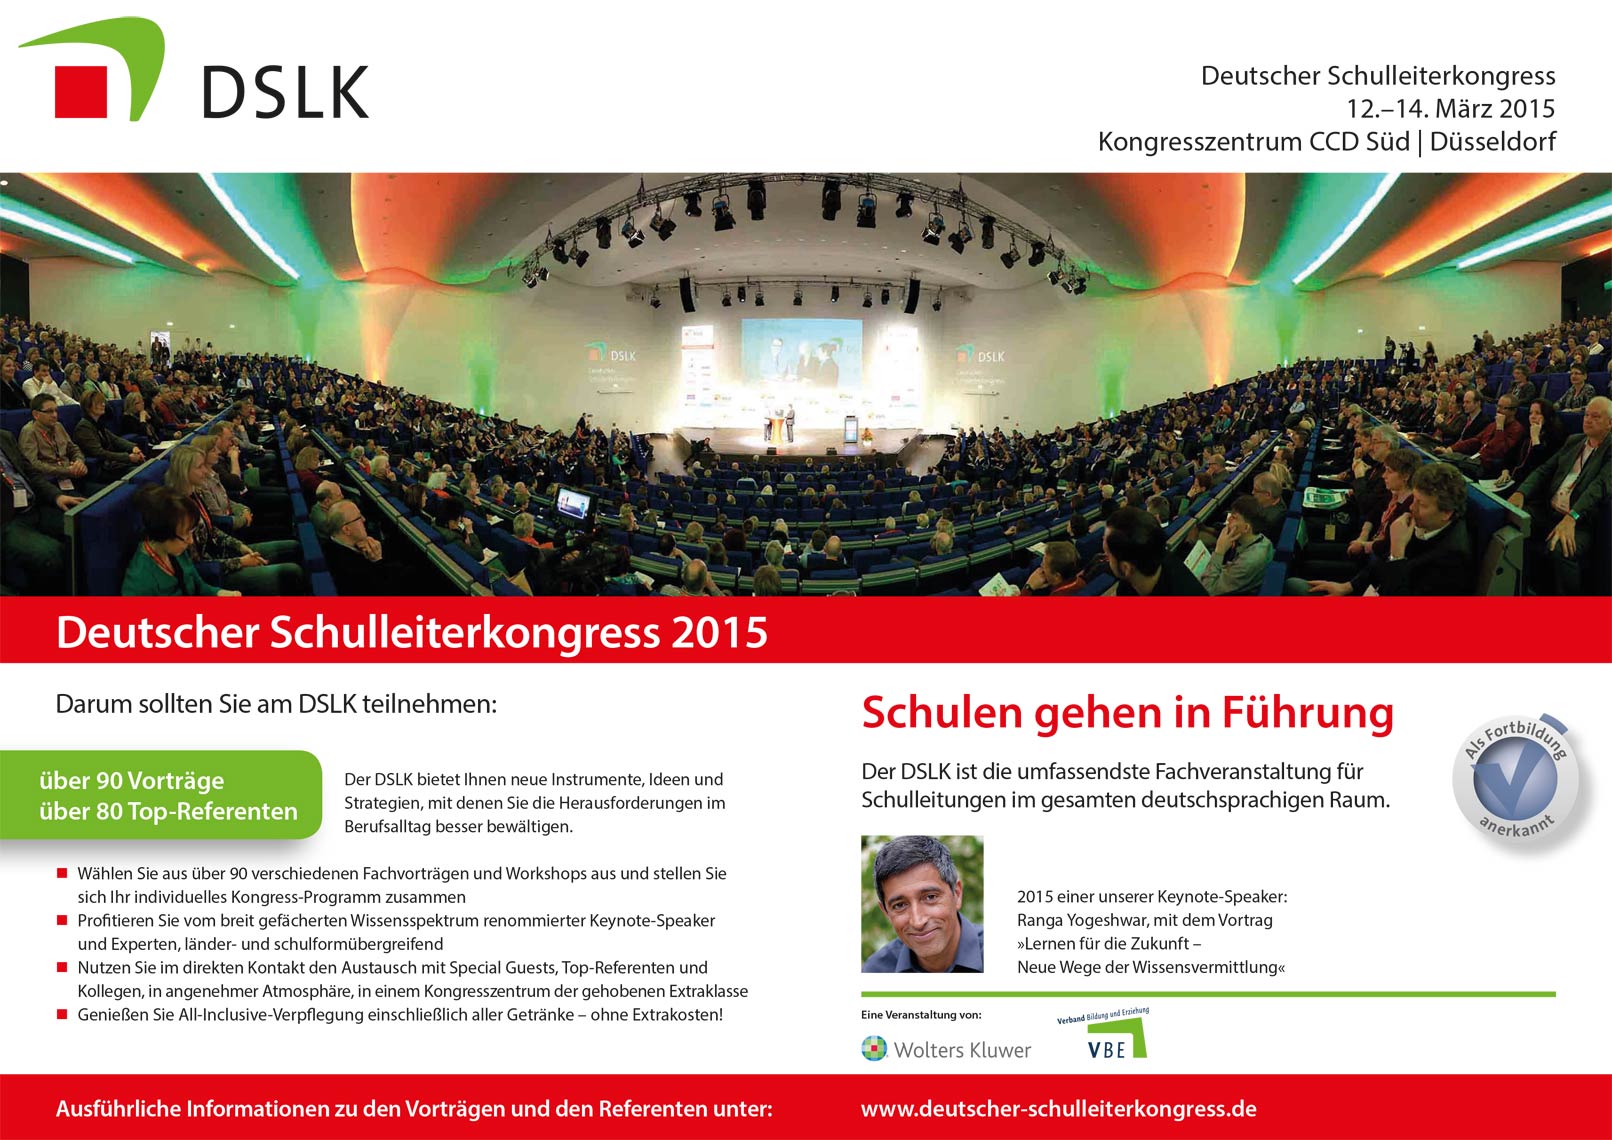 Eventfotograf Kassel: Deutscher Schulleiterkongress 2015